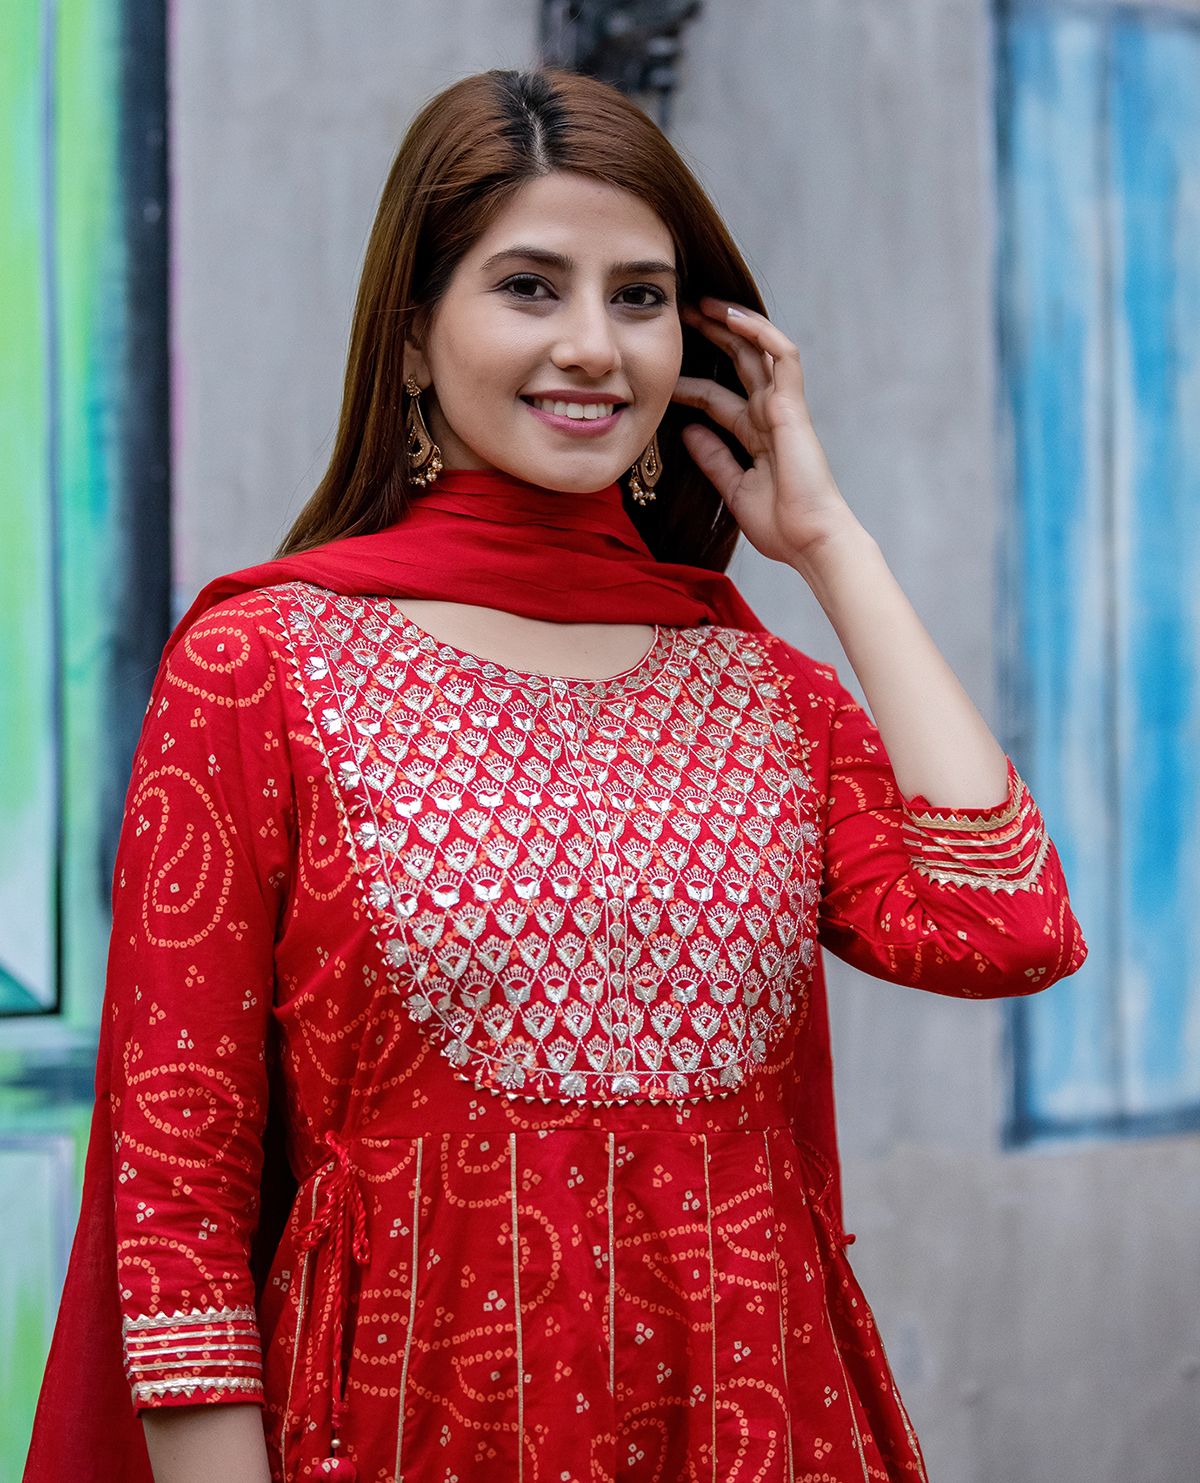 Women's Red Bandhej Printed Anarkali Suit Set - KAAJH